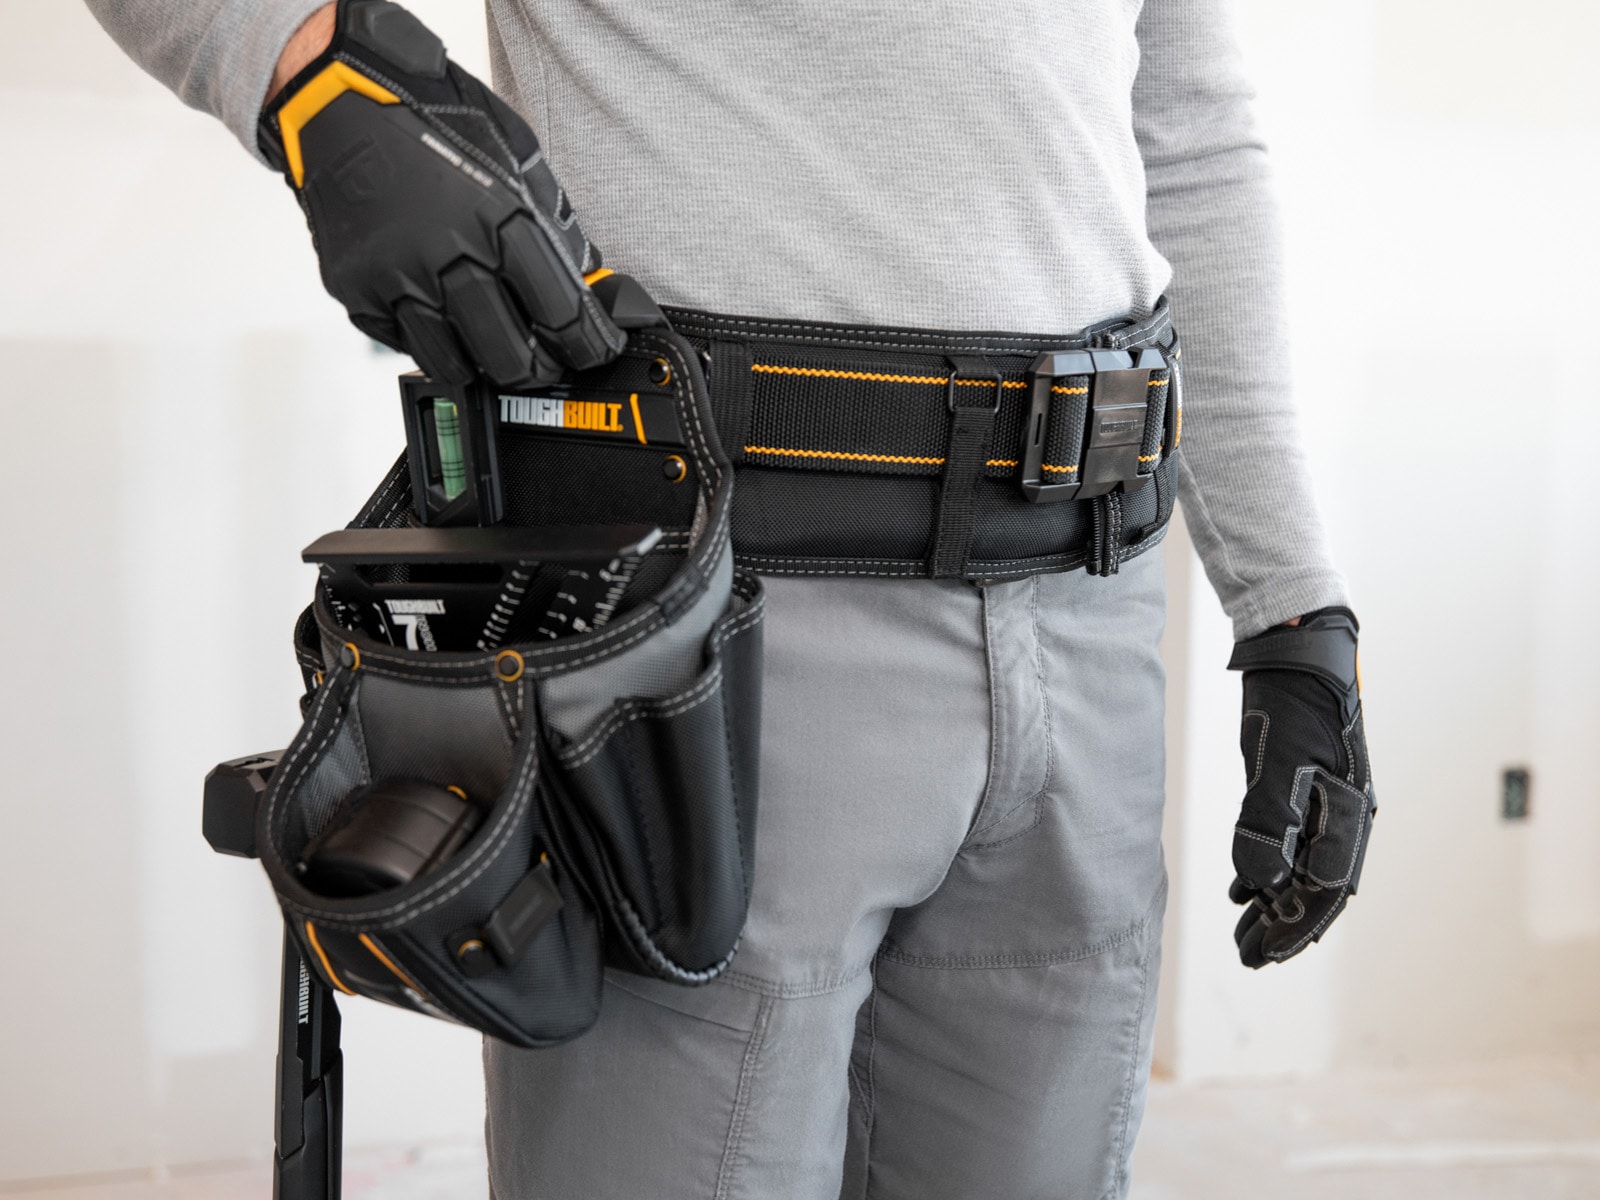 Waist Bag Maintenance Electrician Handy Man Tool Belt Pouch Holster 7 Pocket New 